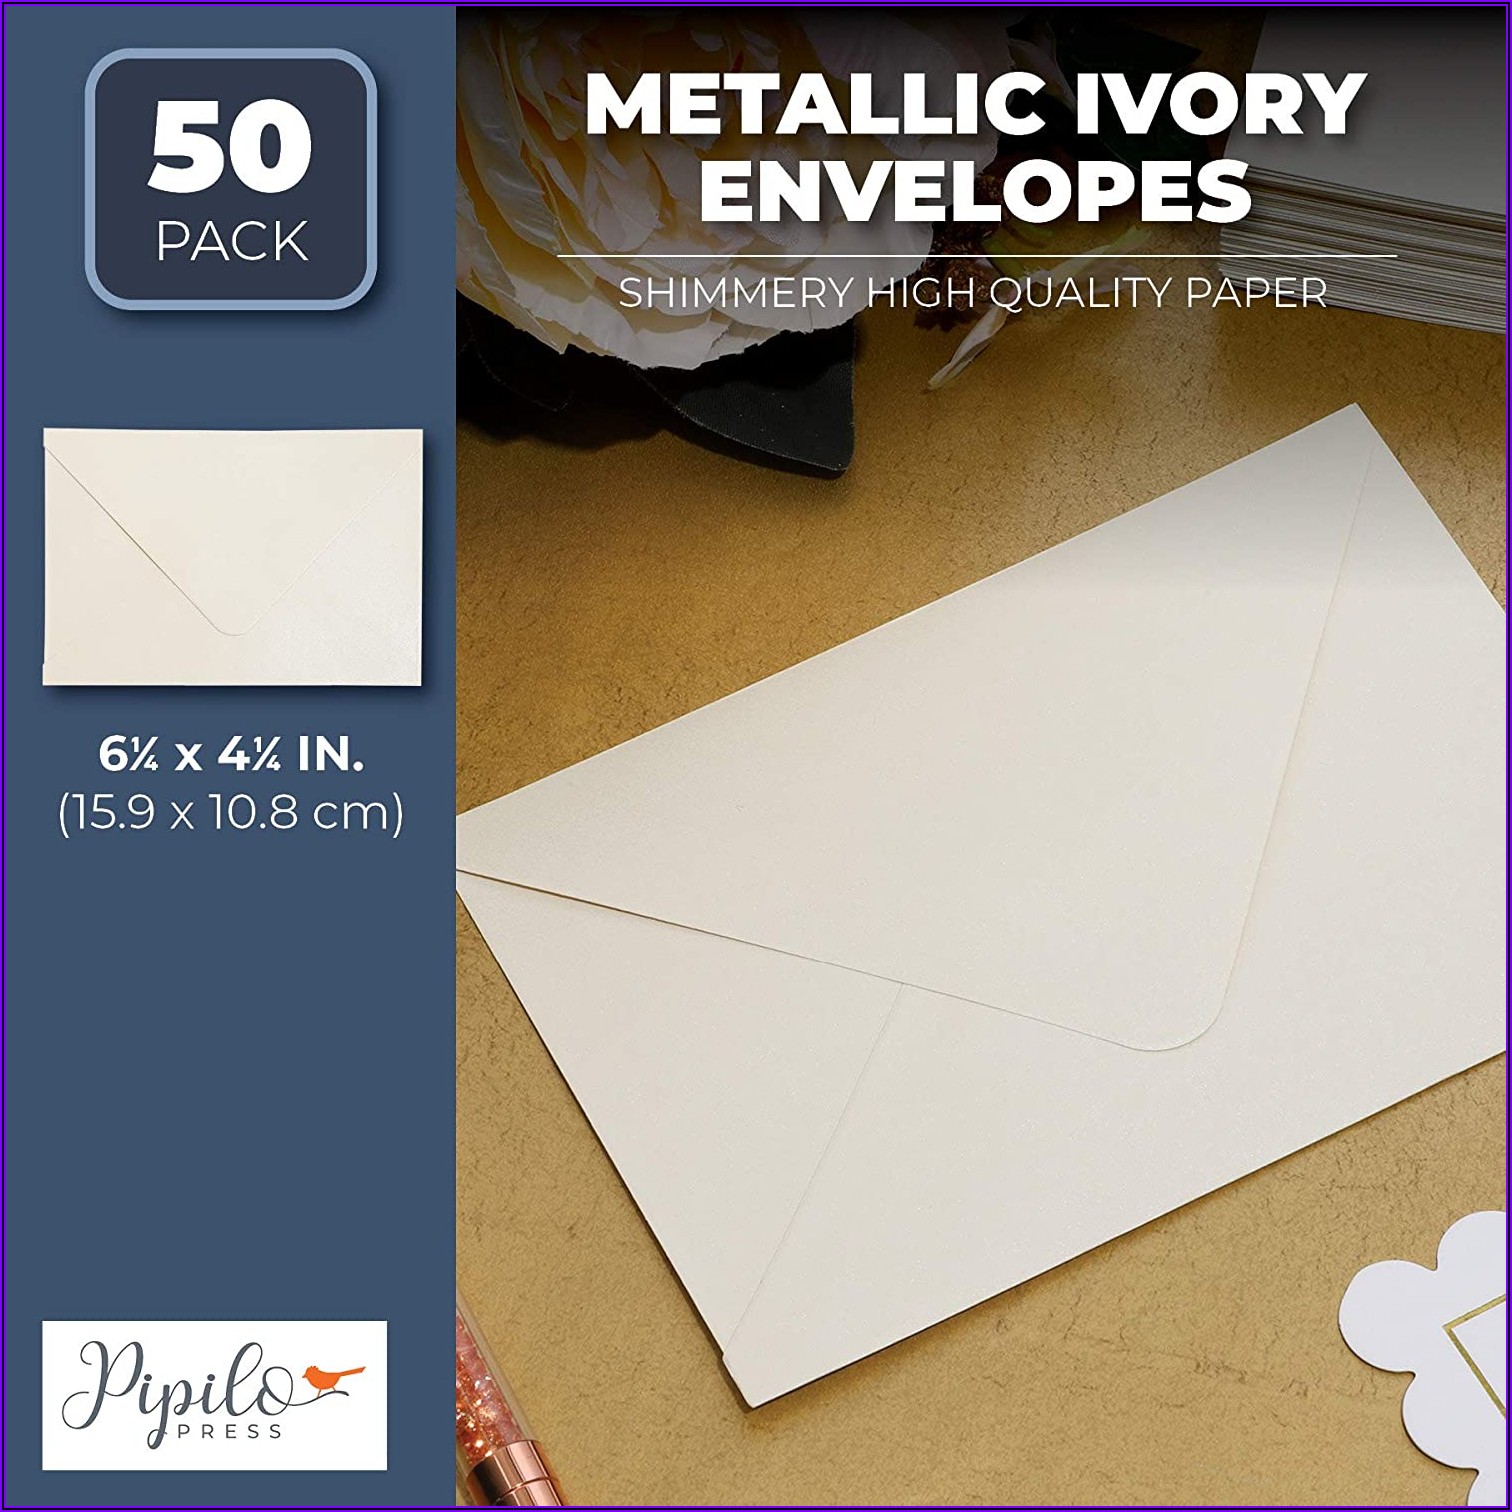 4 X 6 Ivory Envelopes